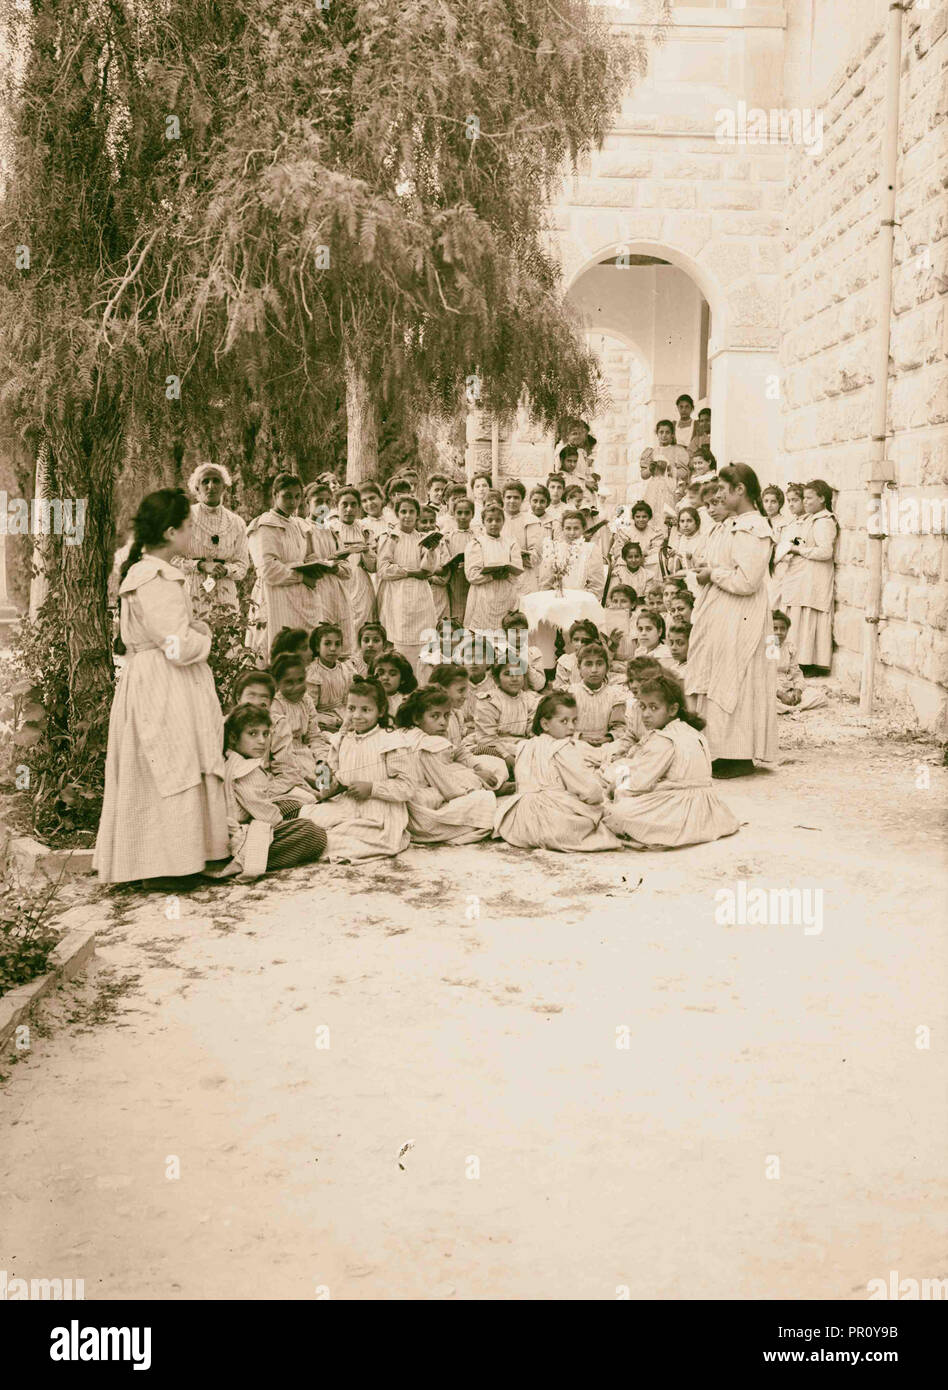 Viste del nord missione inglese educandato 1900 Medio Oriente Israele Foto Stock